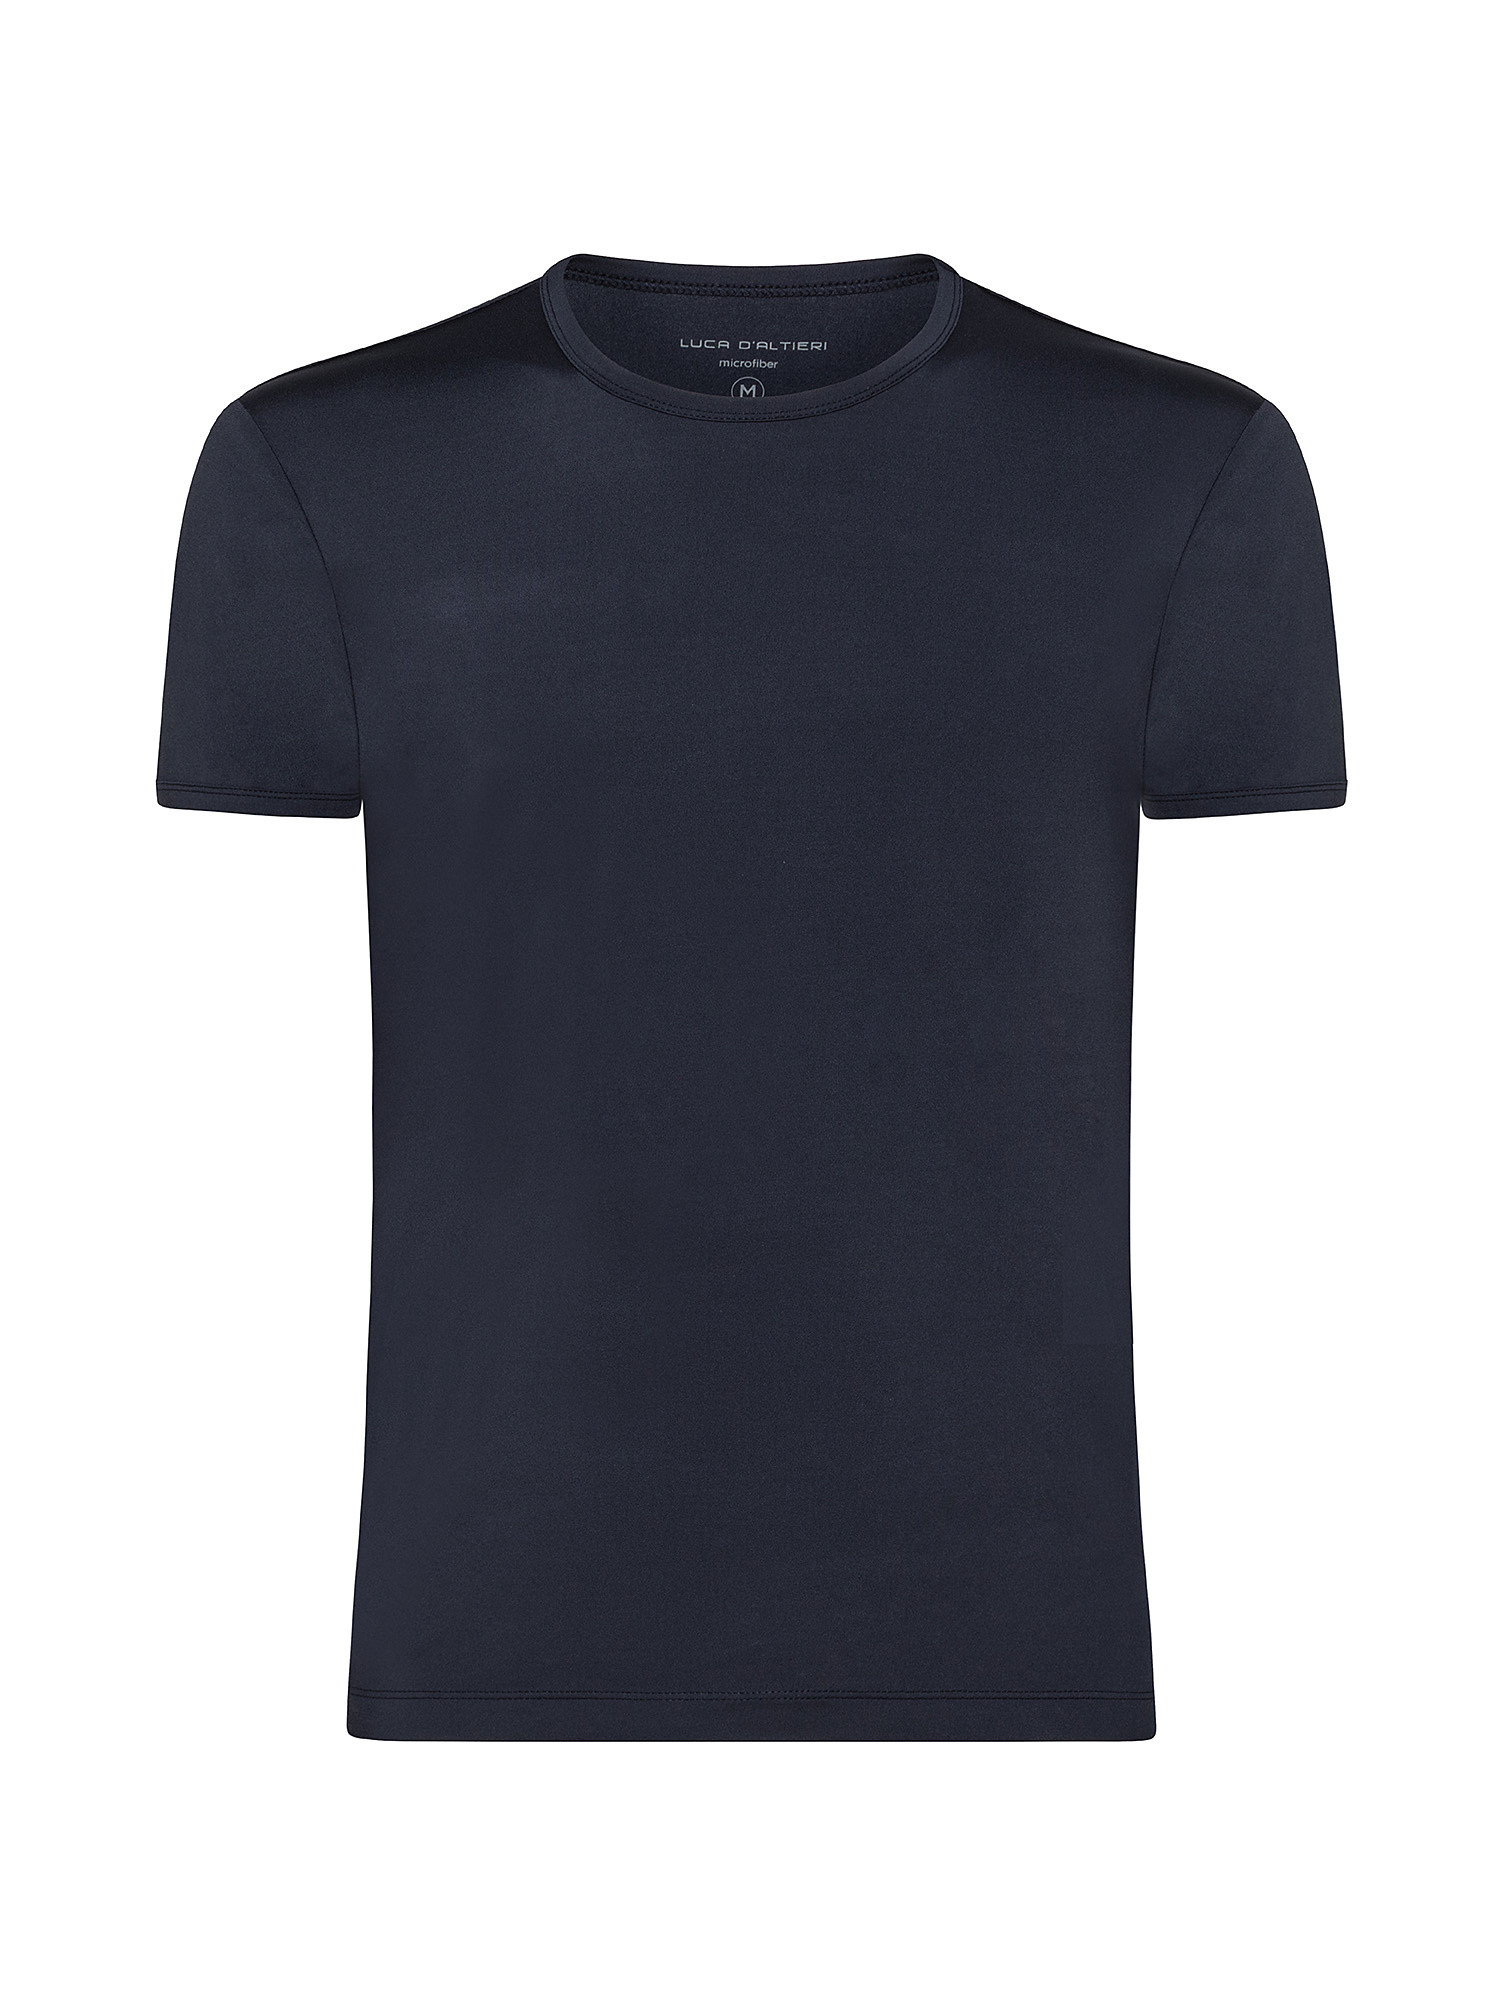 T-shirt girocollo microfibra tinta unita, Blu, large image number 0